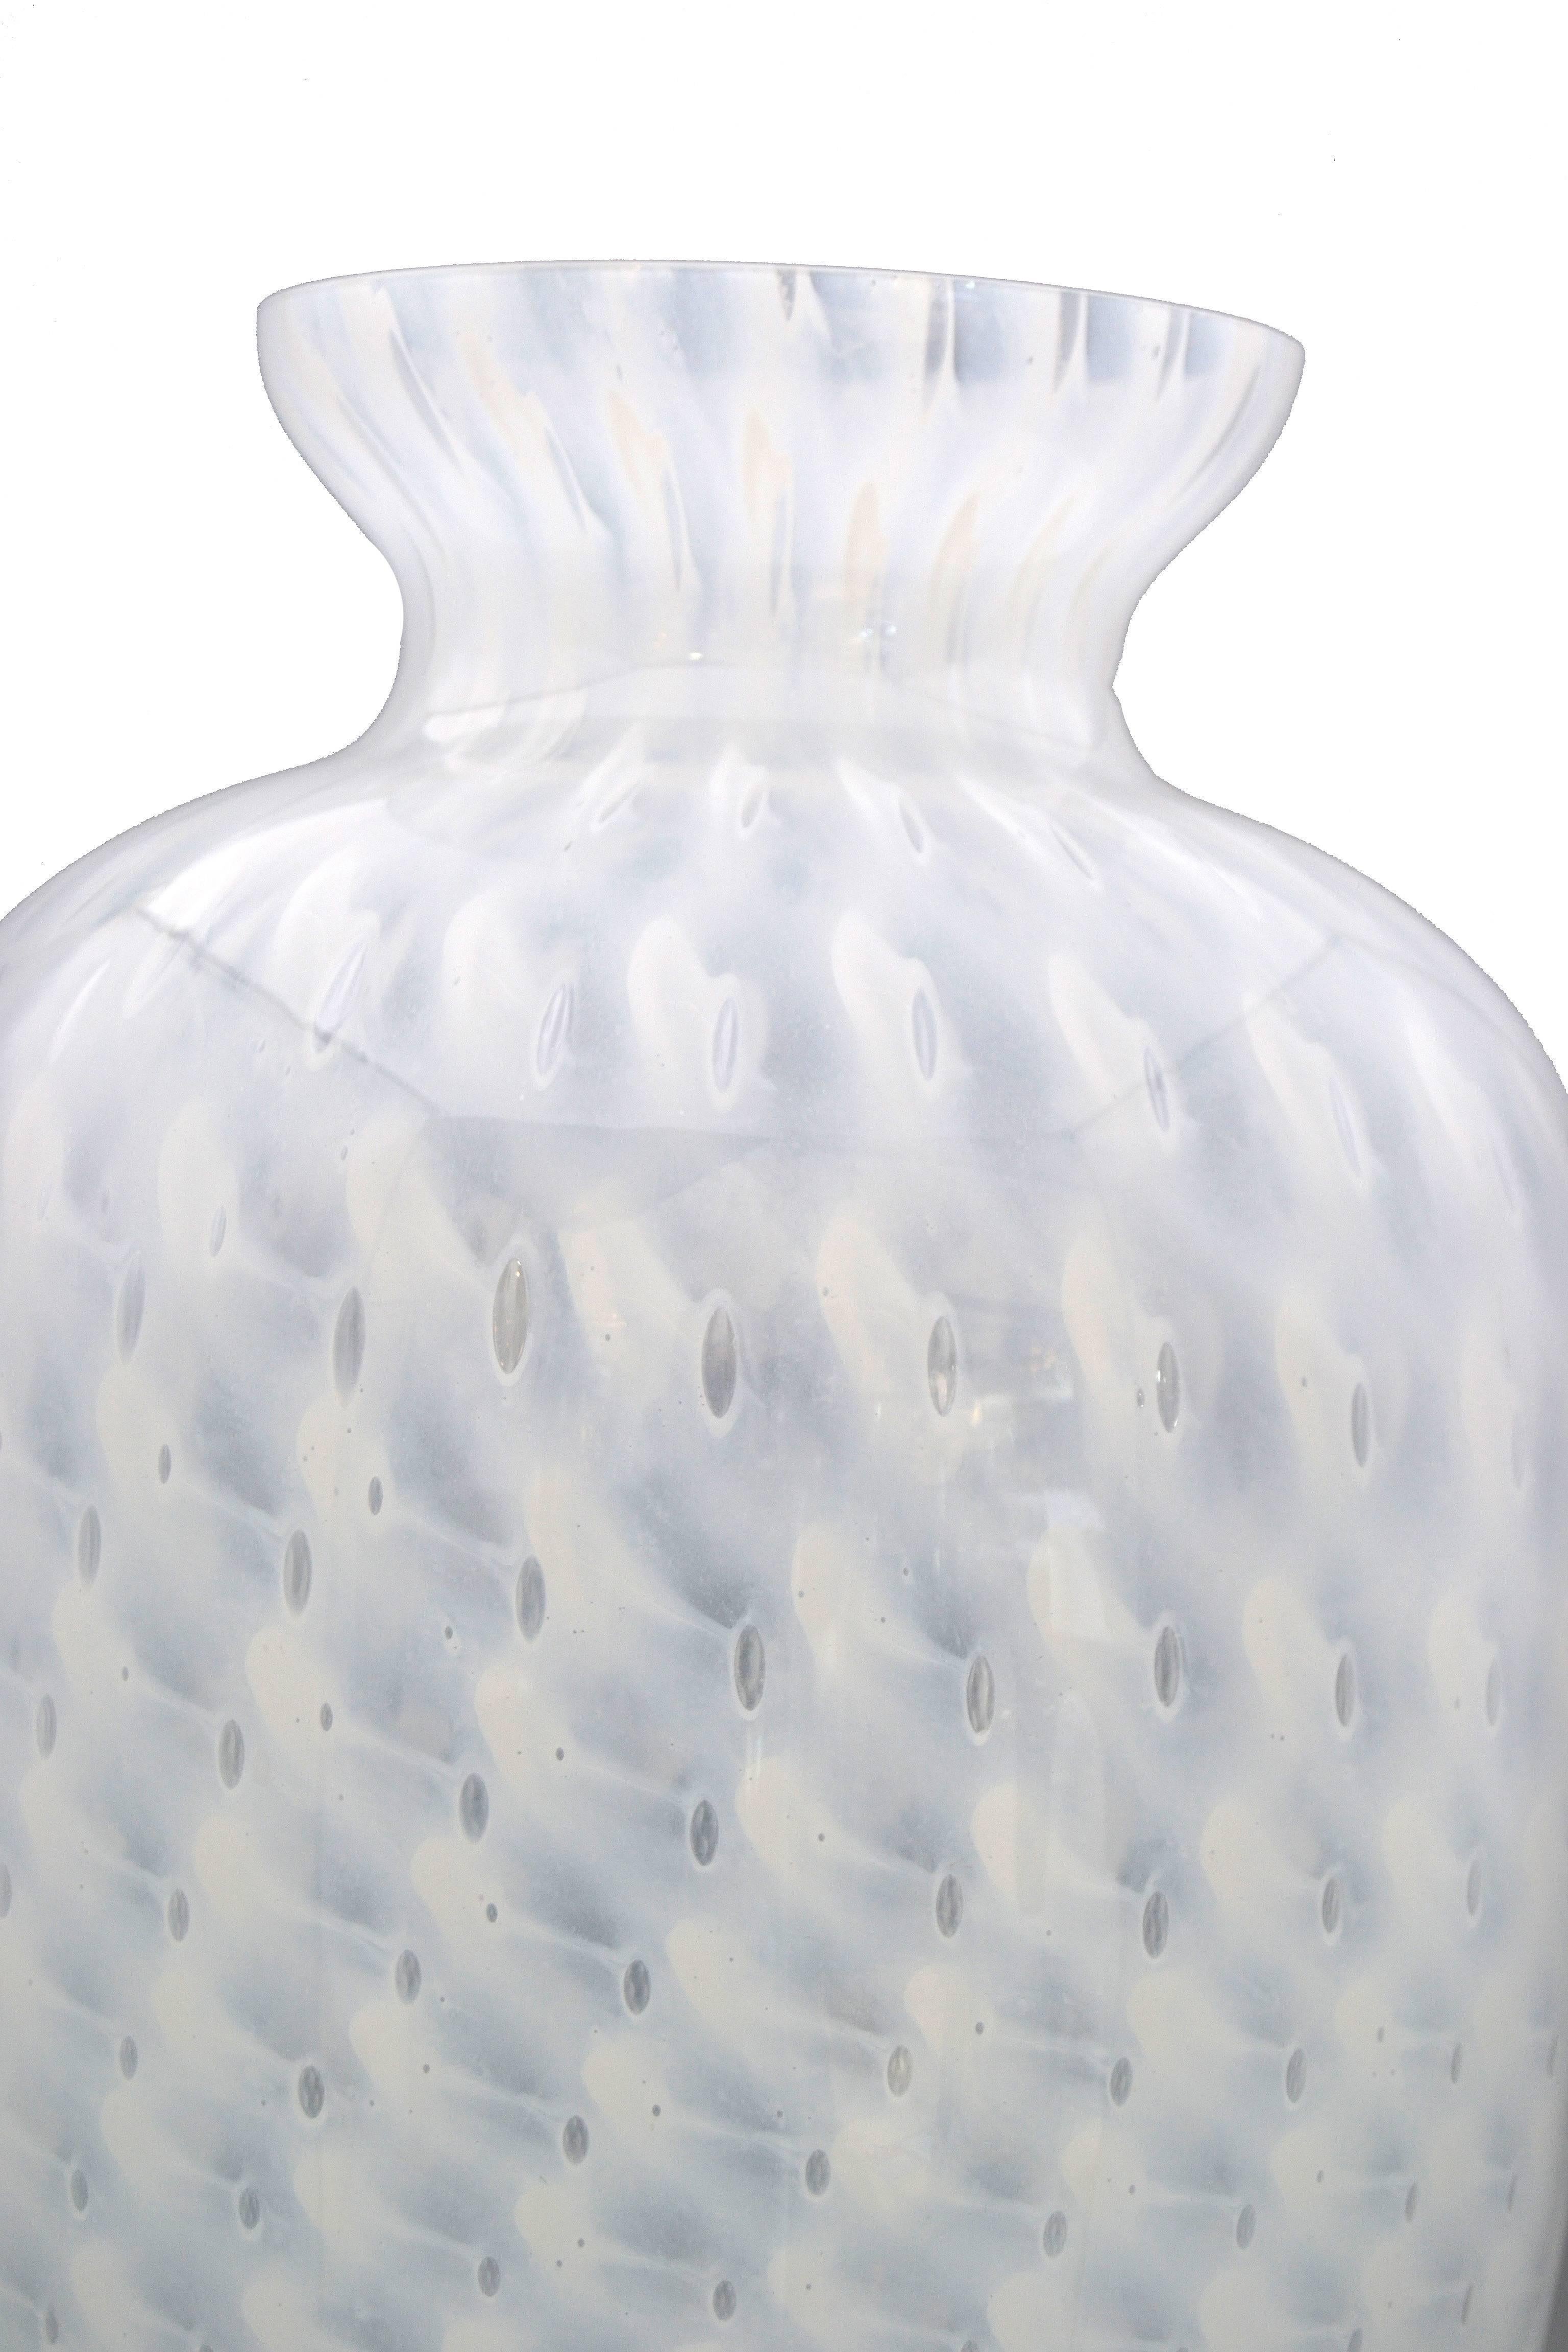 Murano Glass Handblown Italian Murano Art Glass Vase 